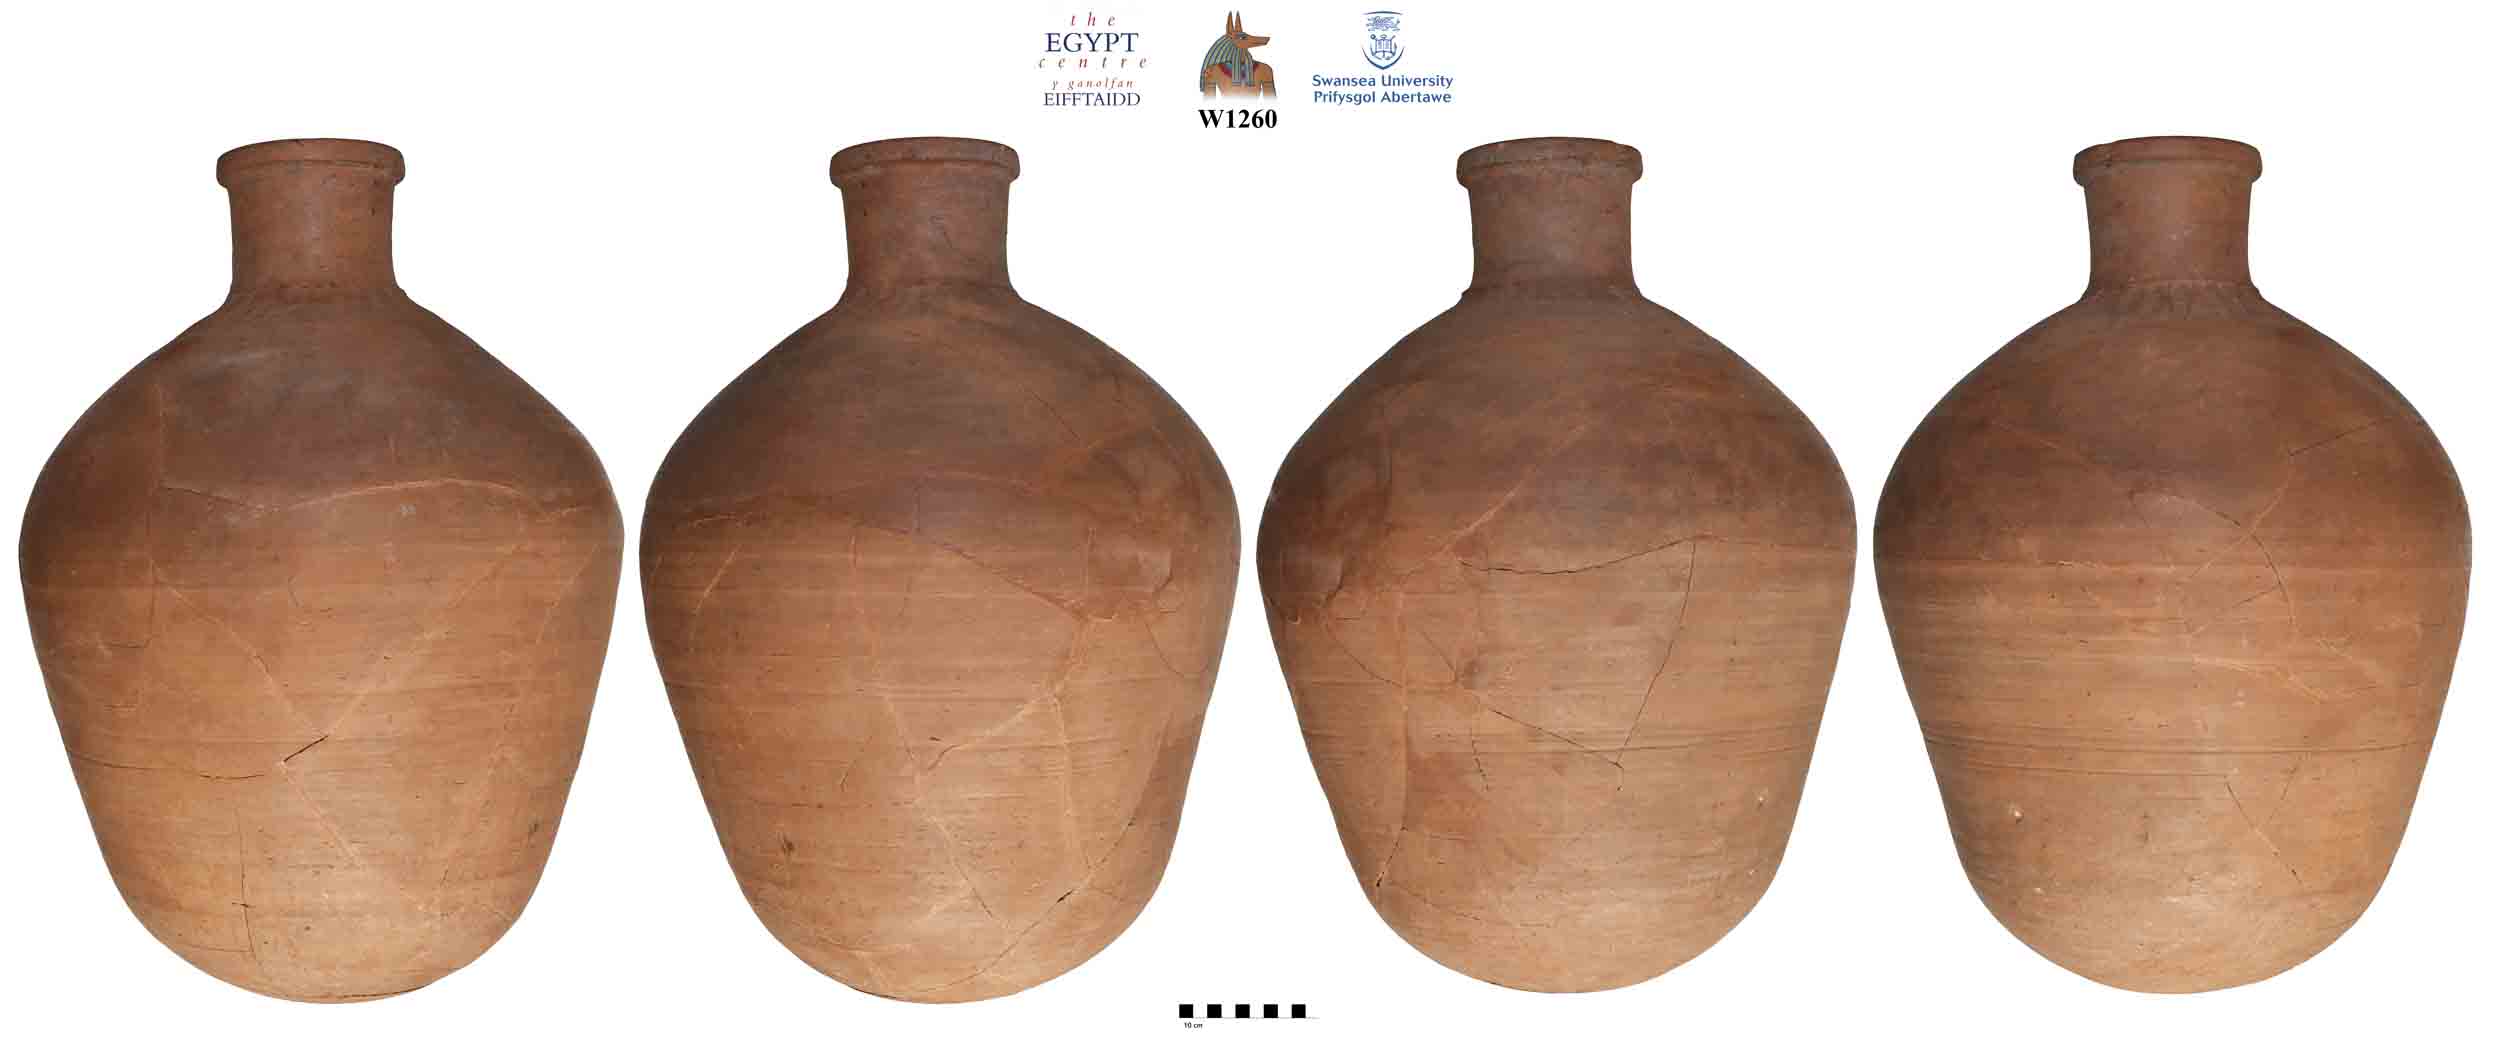 Image for: Large shouldered jar